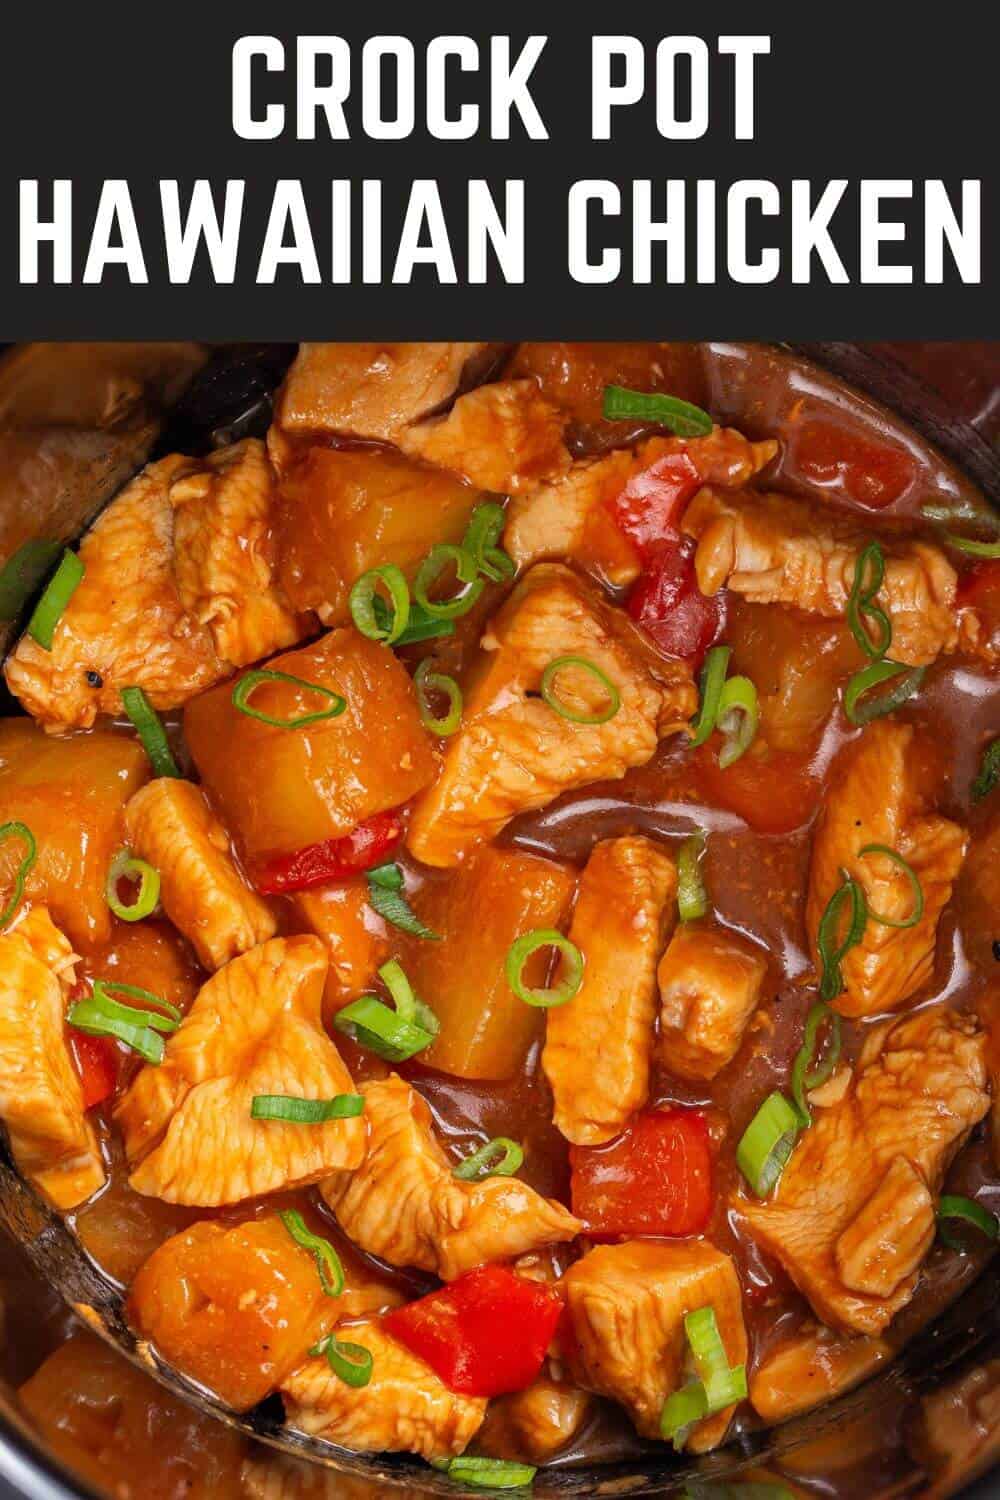 Crock pot hawaiian chicken in the slow cooker.